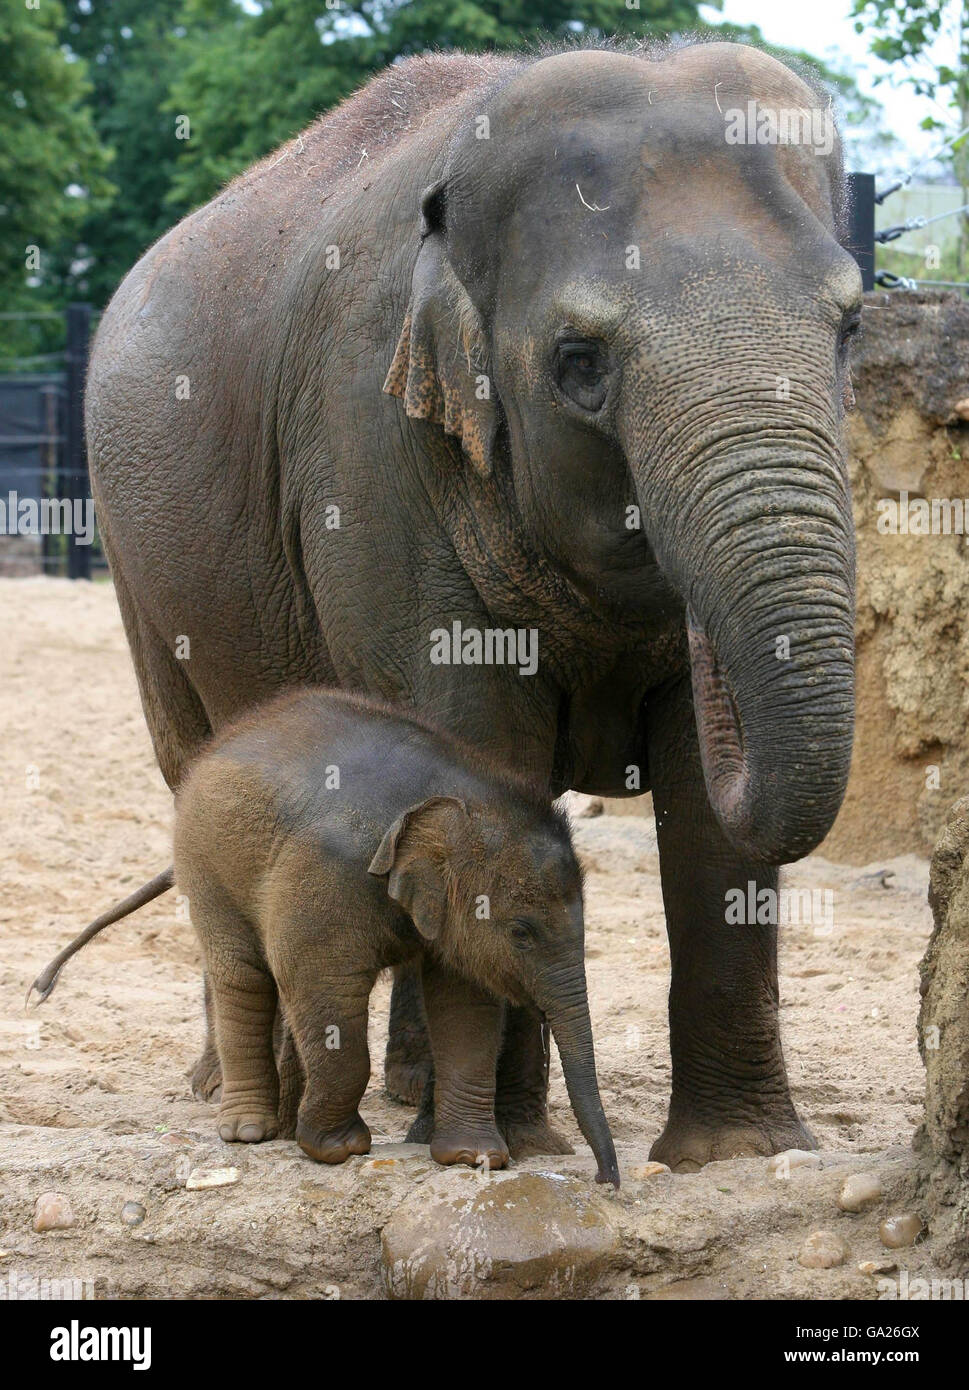 L'arrivo più recente dello zoo di Dublino, un elefante ancora senza nome, con la madre Bernhardine, 23 anni, nel nuovo habitat Kaziranga Forest Trail dello zoo di Dublino, che è stato aperto oggi da un Taoiseach Bertie Ahern. Foto Stock